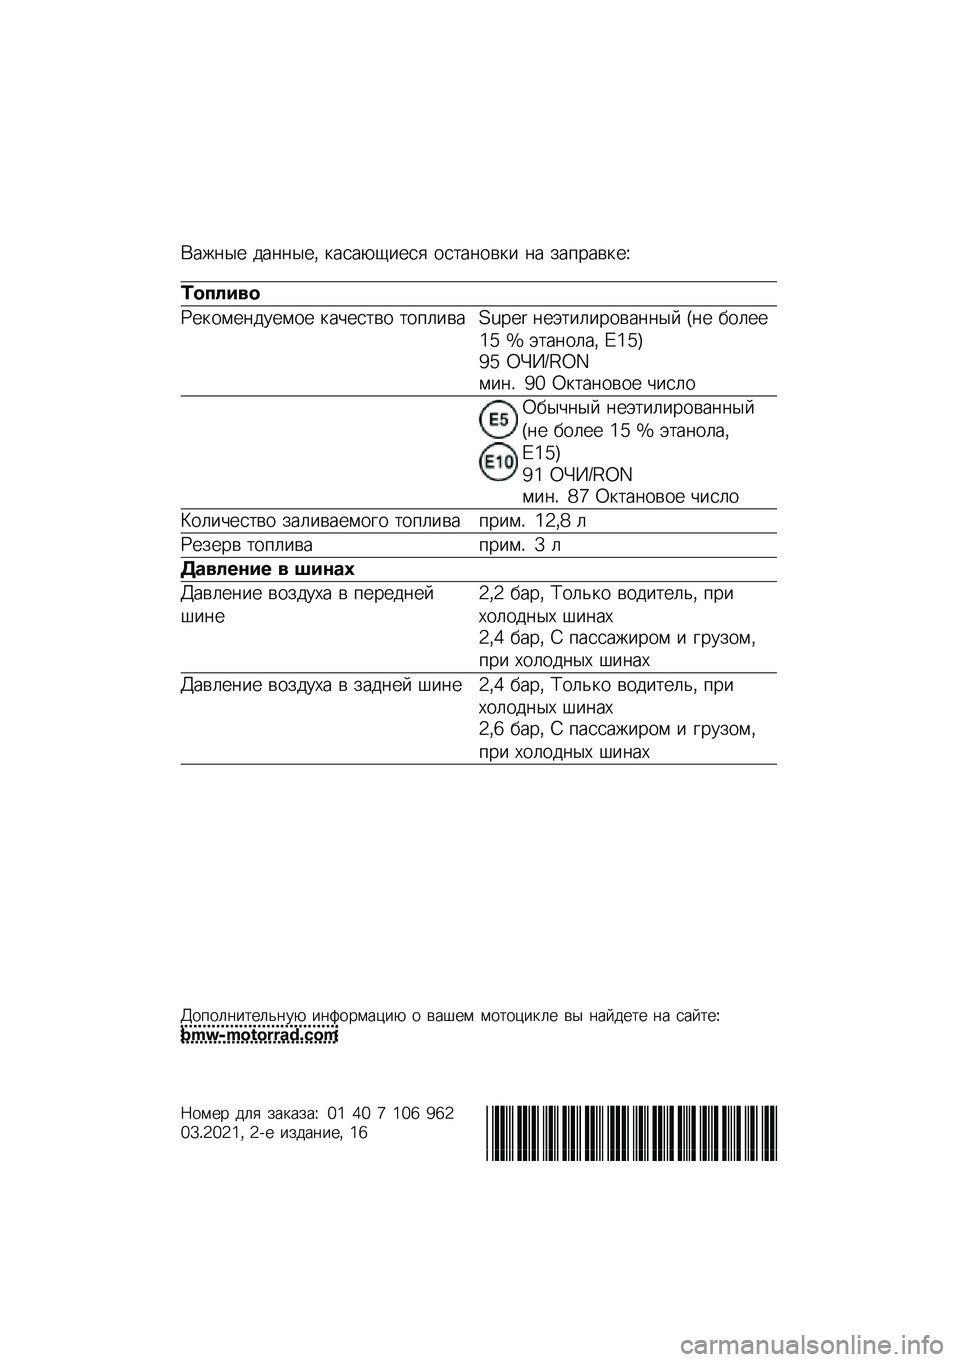 BMW MOTORRAD C 400 GT 2021  Руководство по эксплуатации (in Russian) �(���	�� ���	�	���* �
����-�1���� ���
��	���
� �	� ���%����
��M
�	������
�N��
����	������ �
��&���
�� �
��%���� �O�P�Q�:�; �	��+�
��������